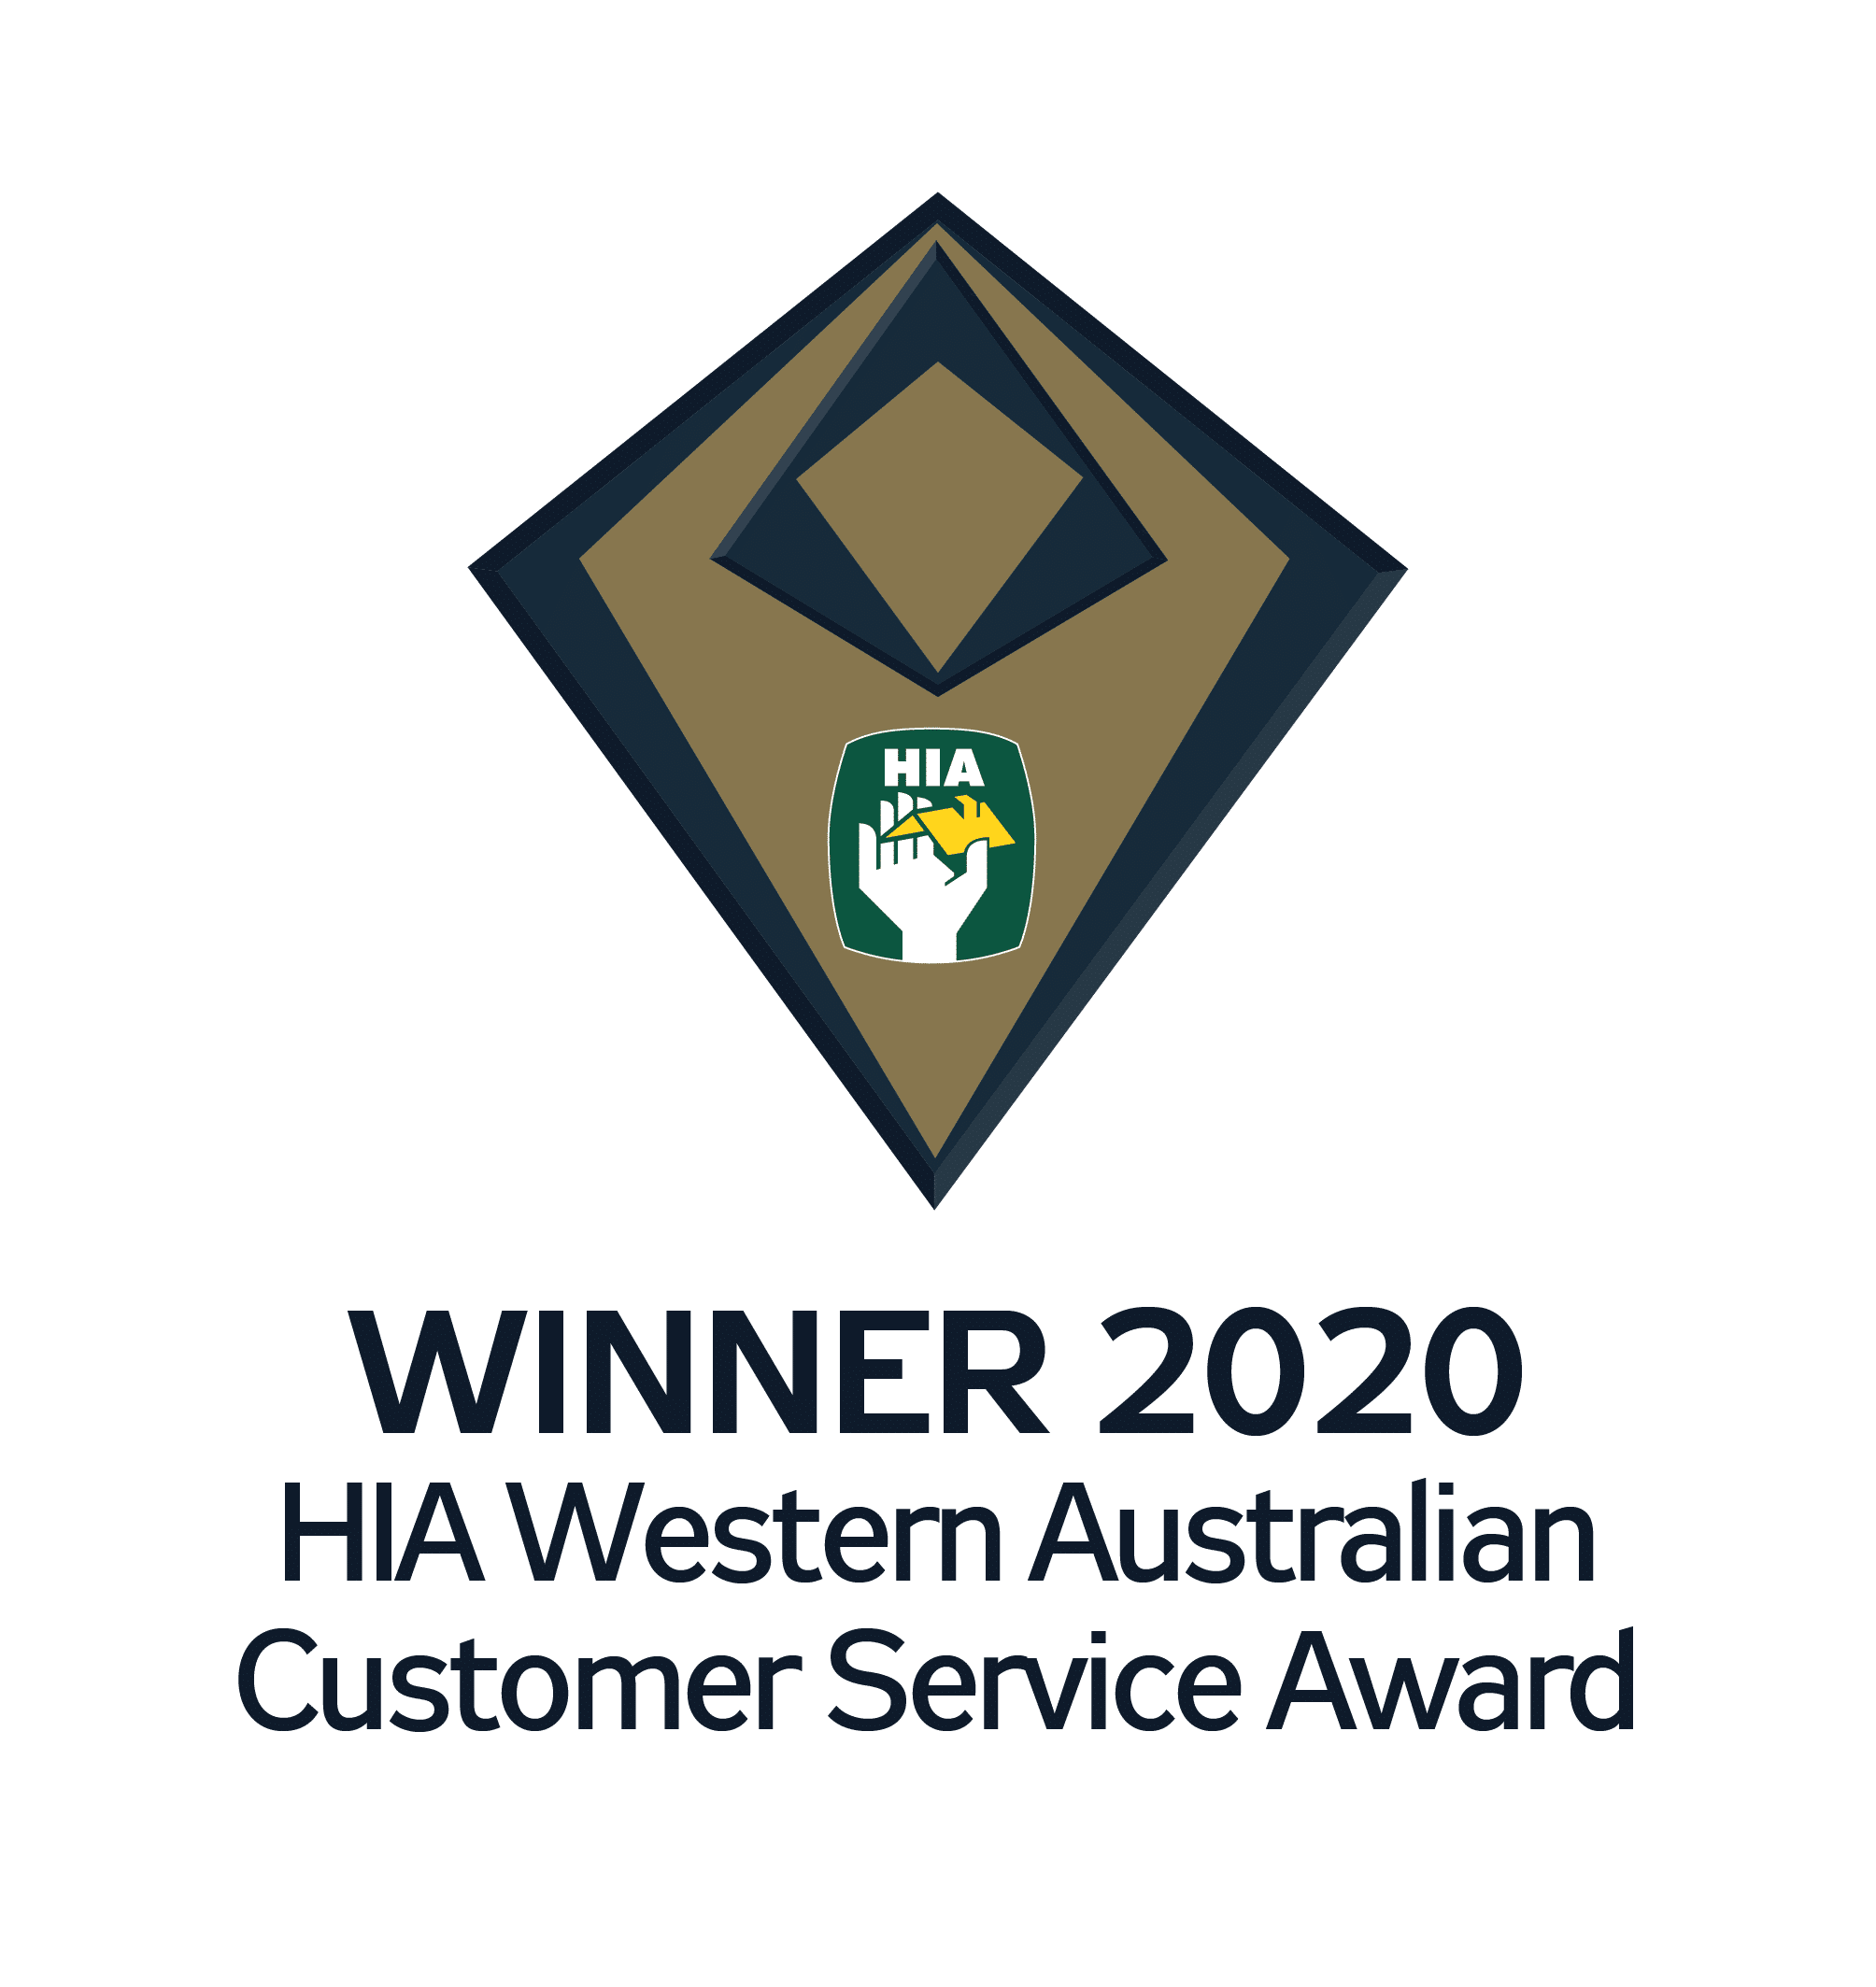 HIA Western Australian Customer Service Award